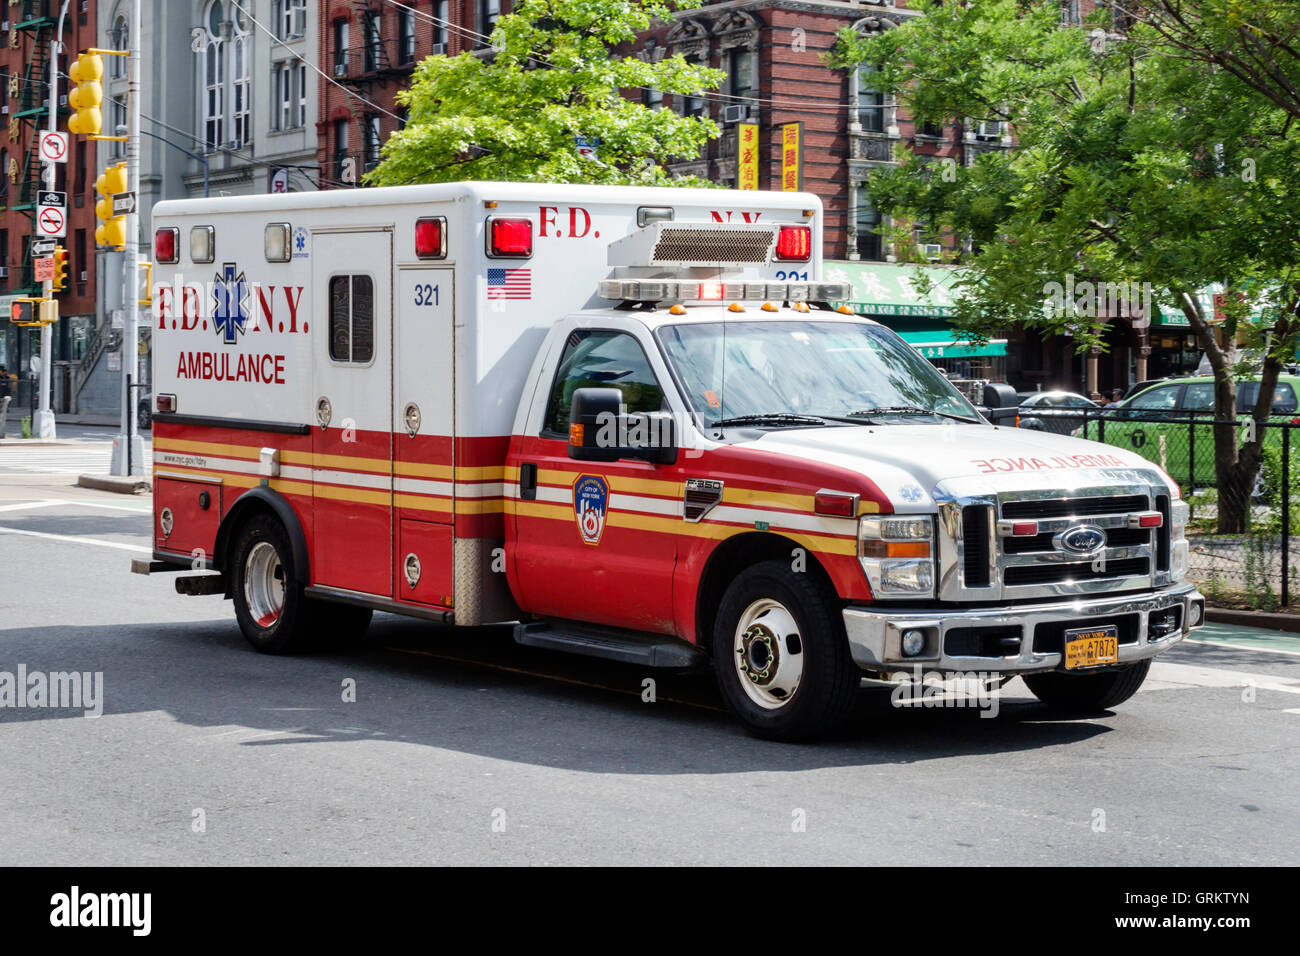 New York City,NY NYC Lower Manhattan,Chinatown,ambulance,emergency vehicle,FDNY,NY160716007 Stock Photo